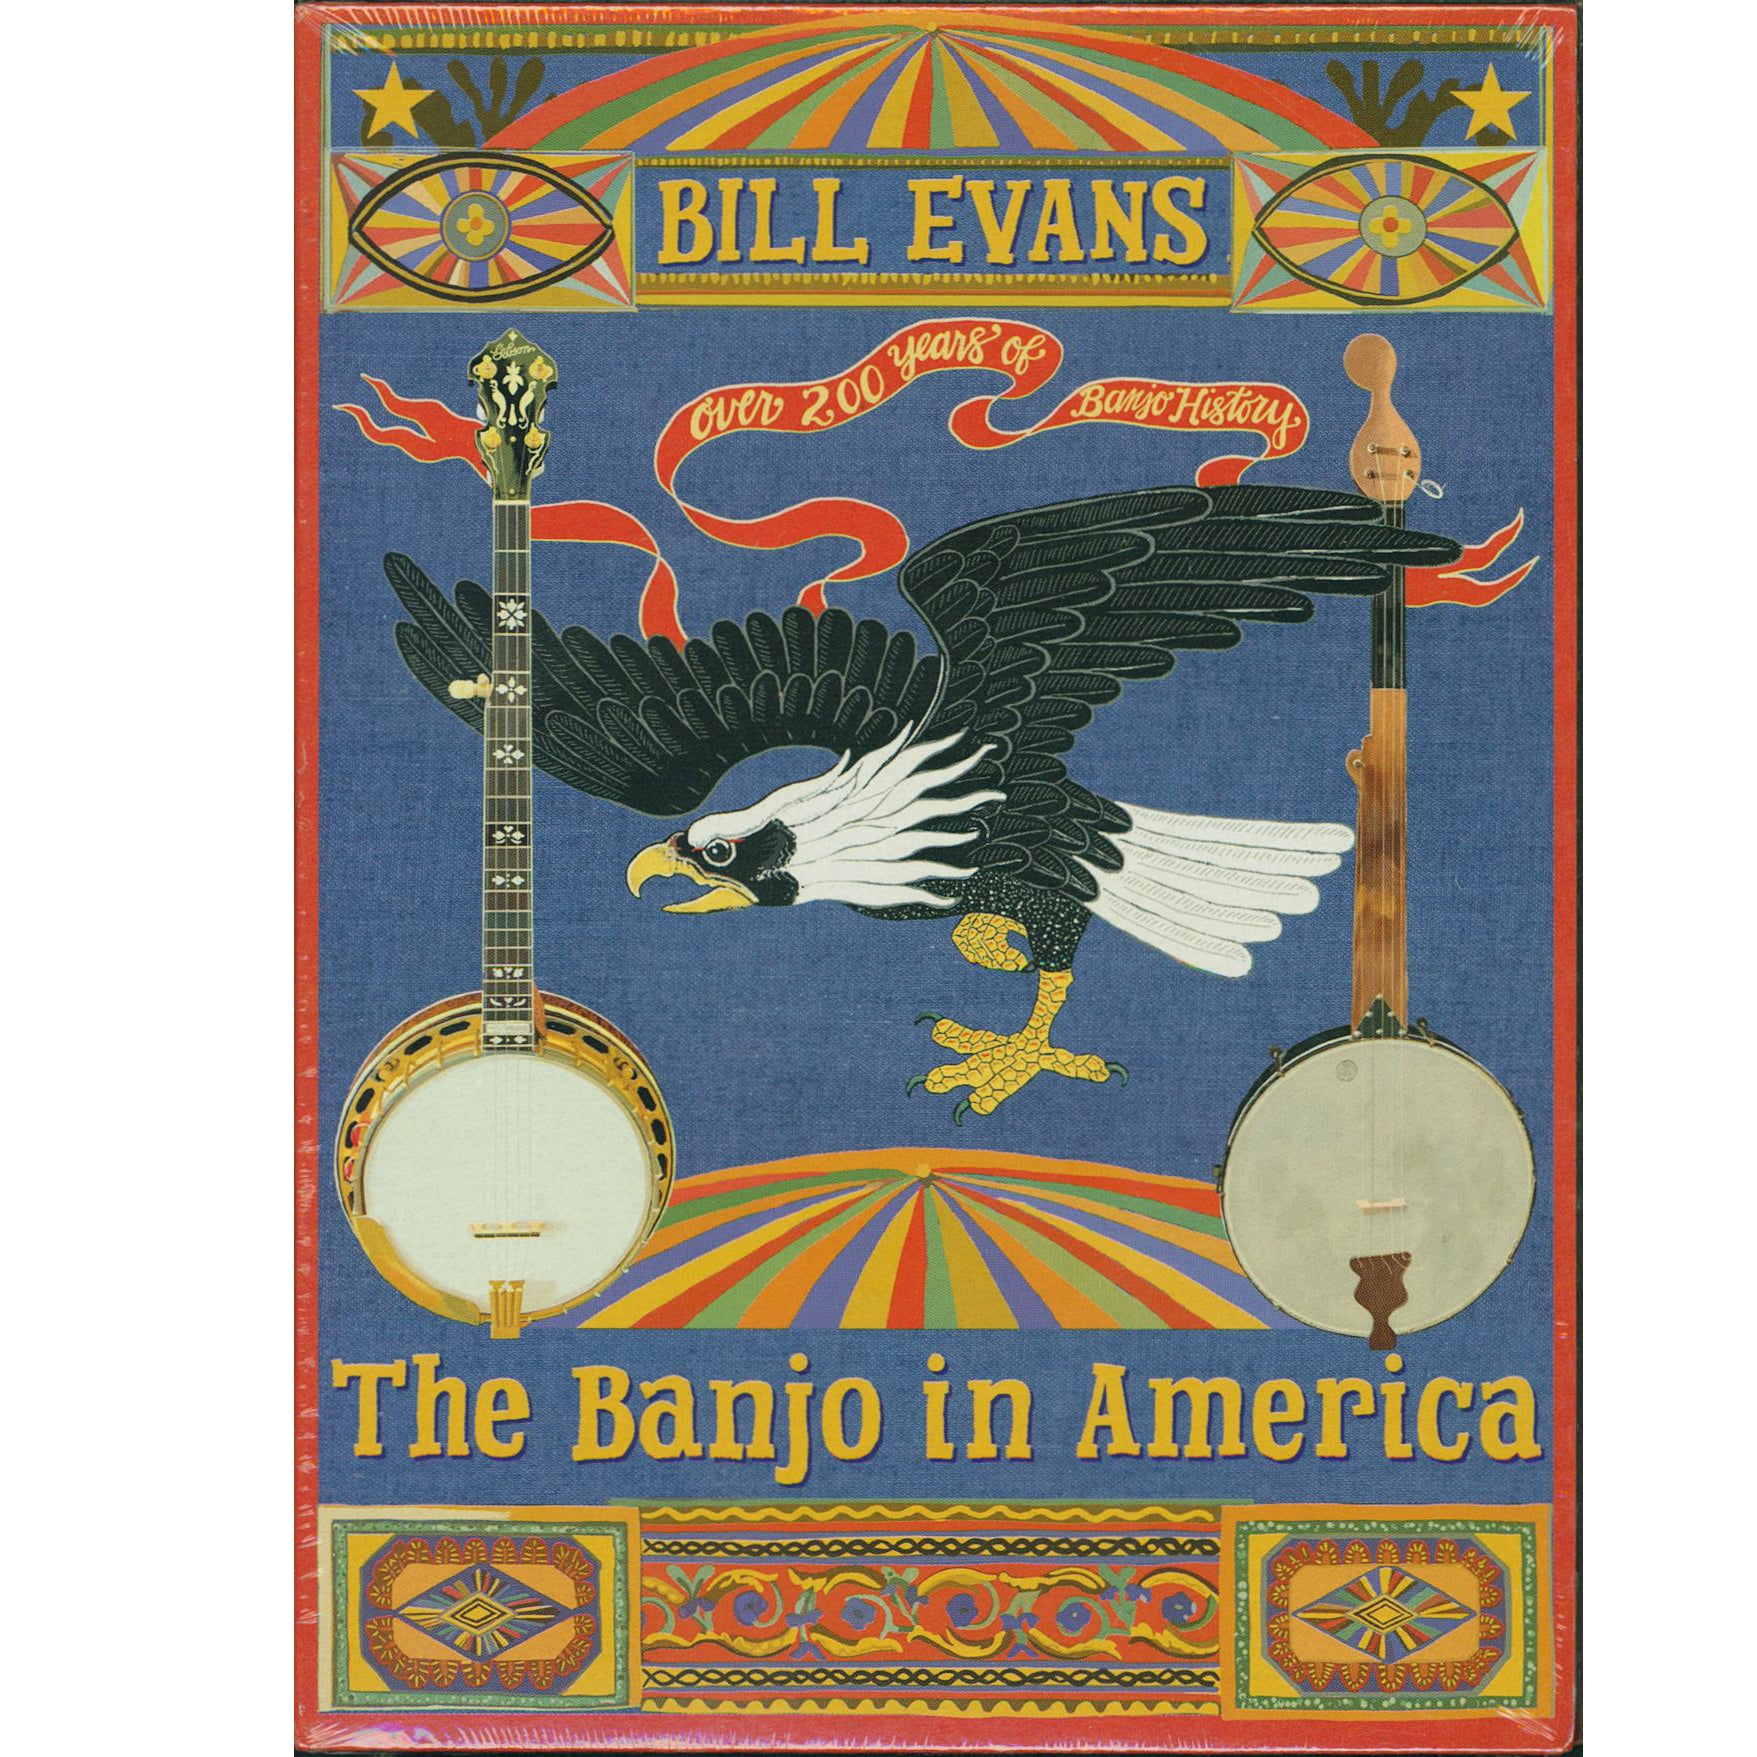 The　America　Banjo　in　Bill　Evans